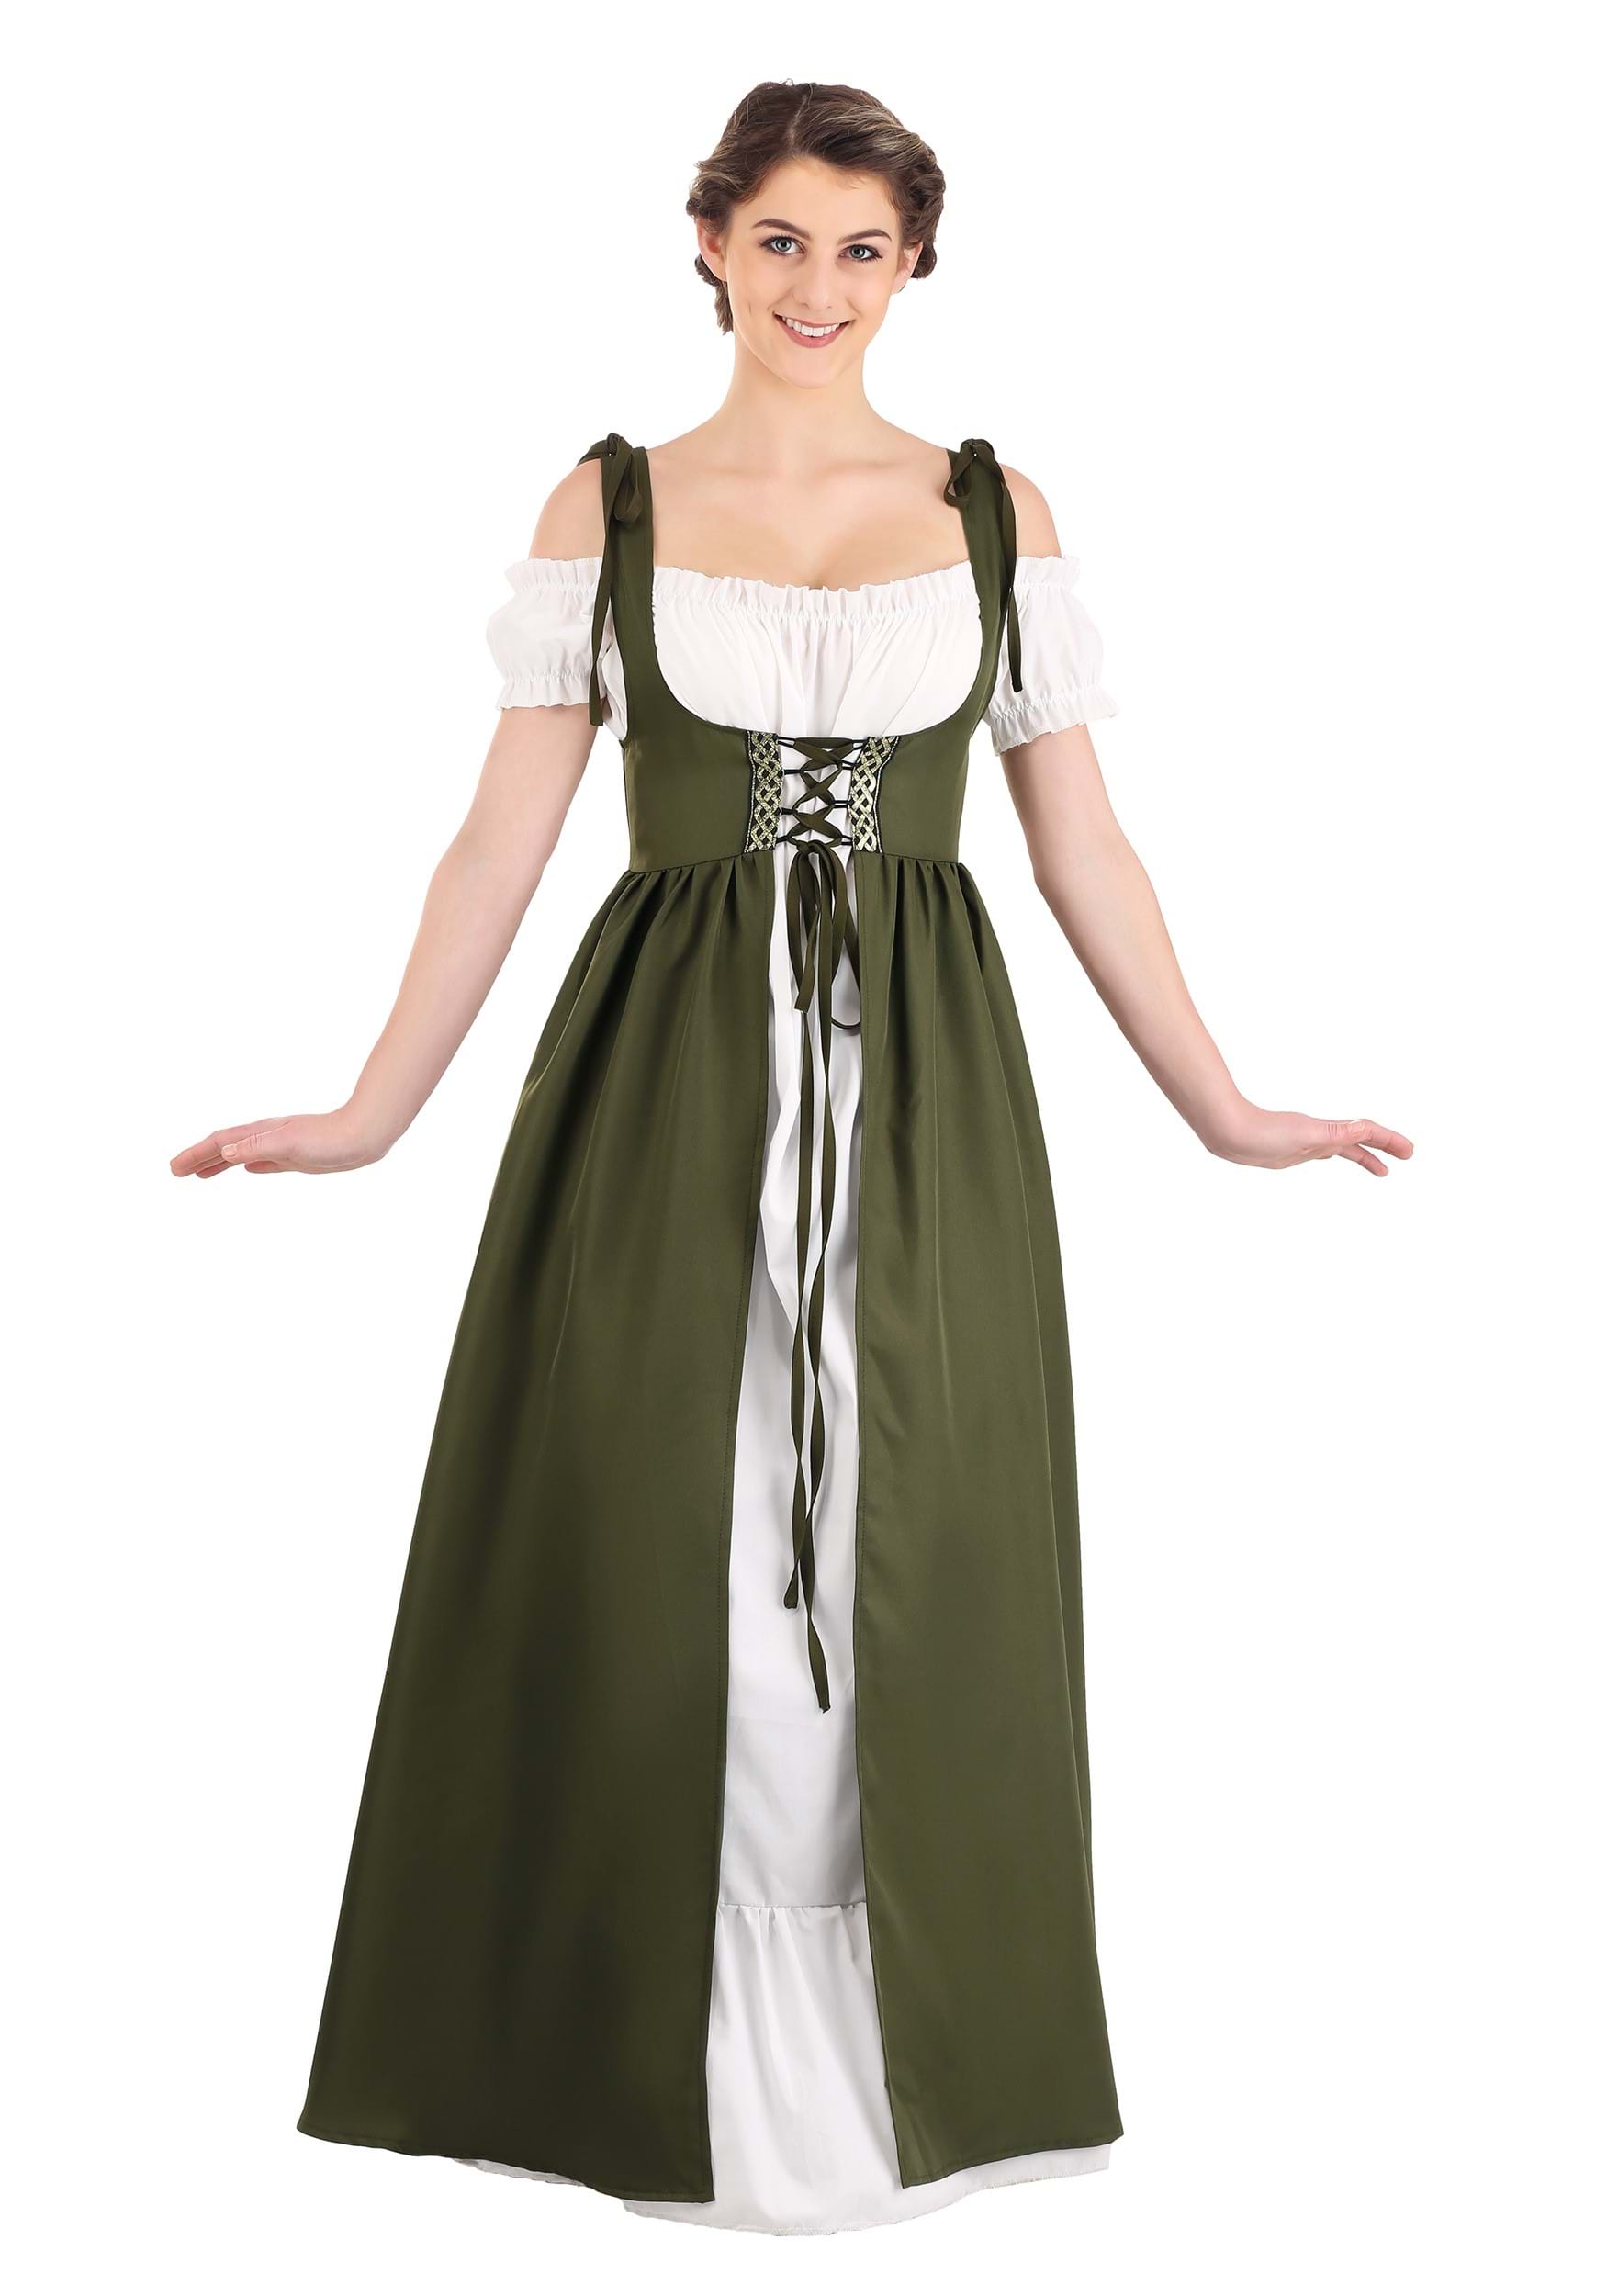 Womens Celtic Renaissance Costume